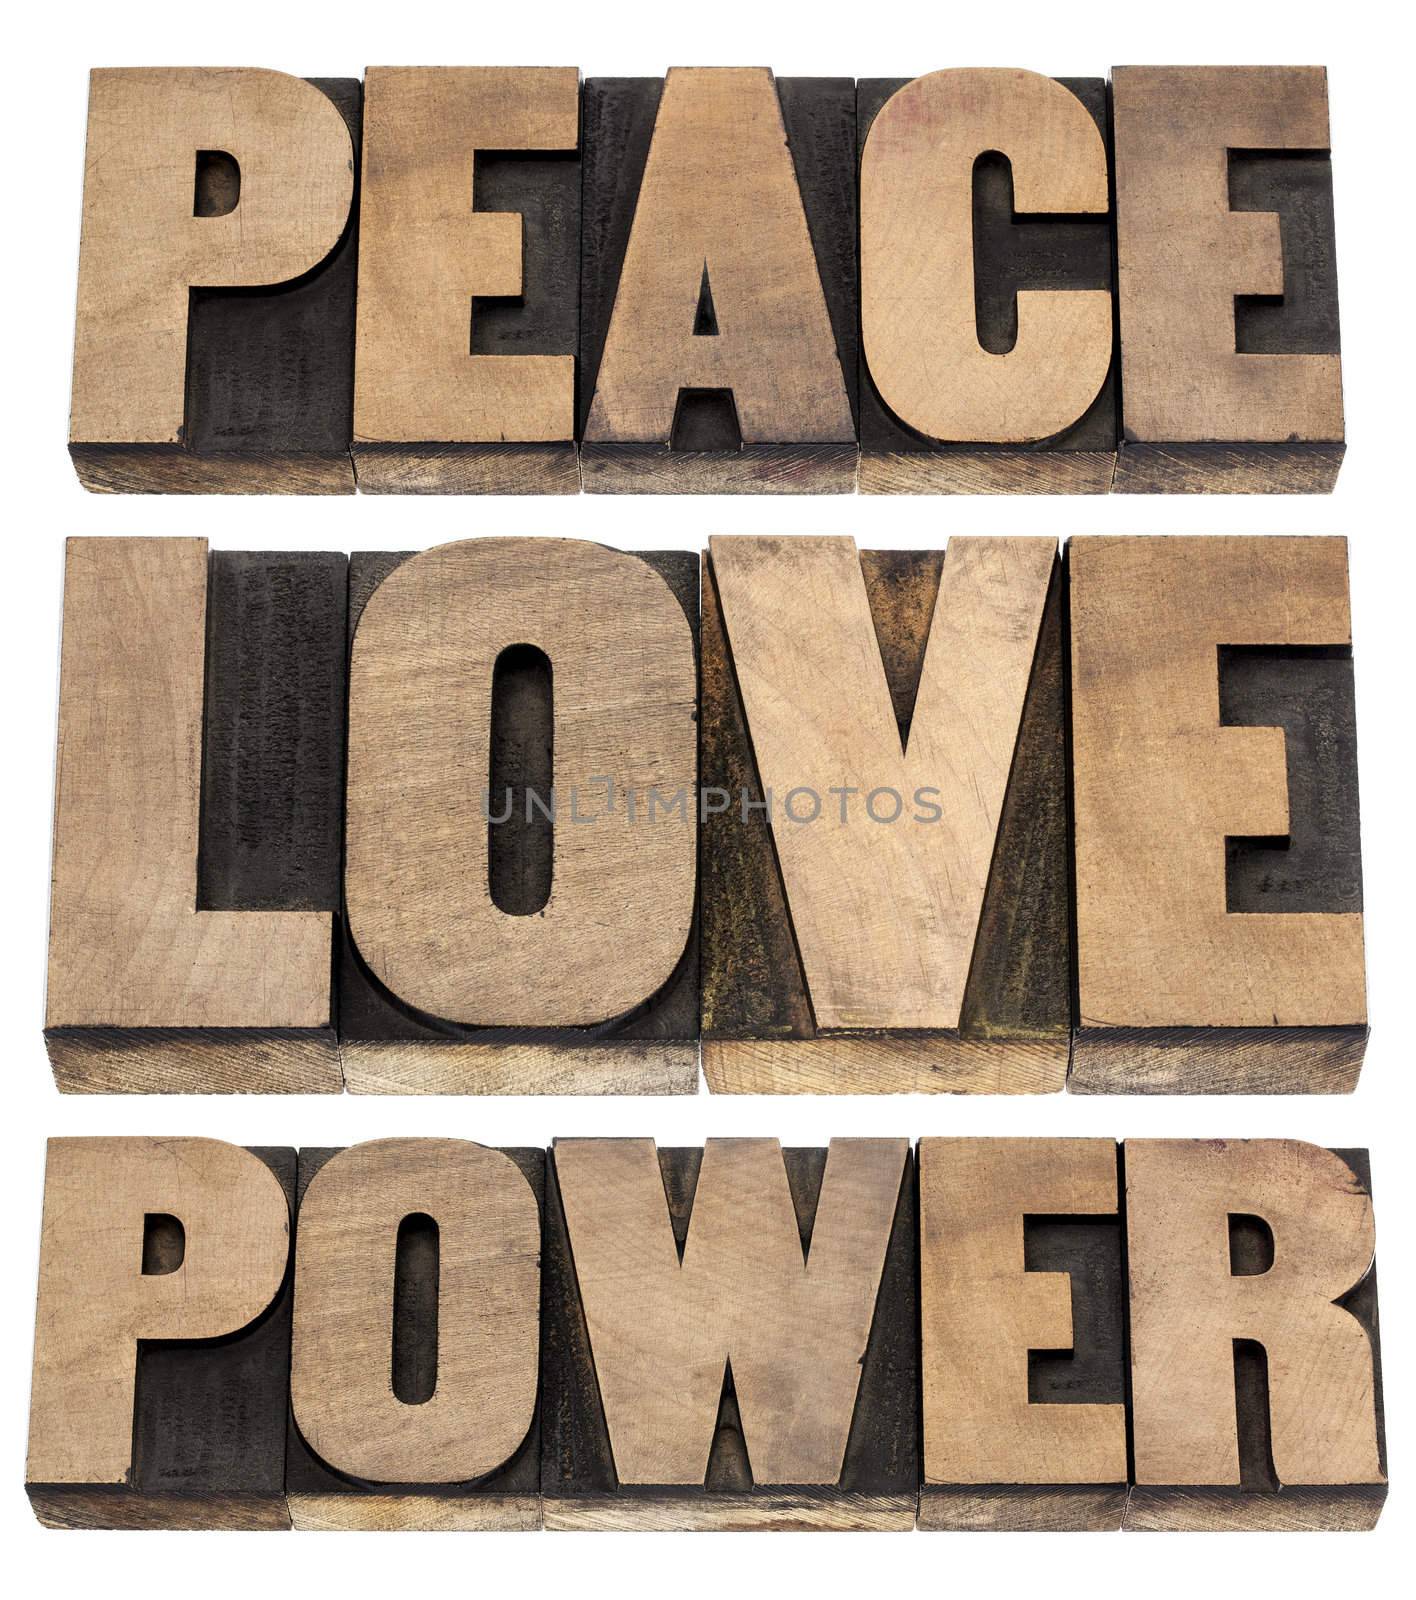 peace, love, power words by PixelsAway